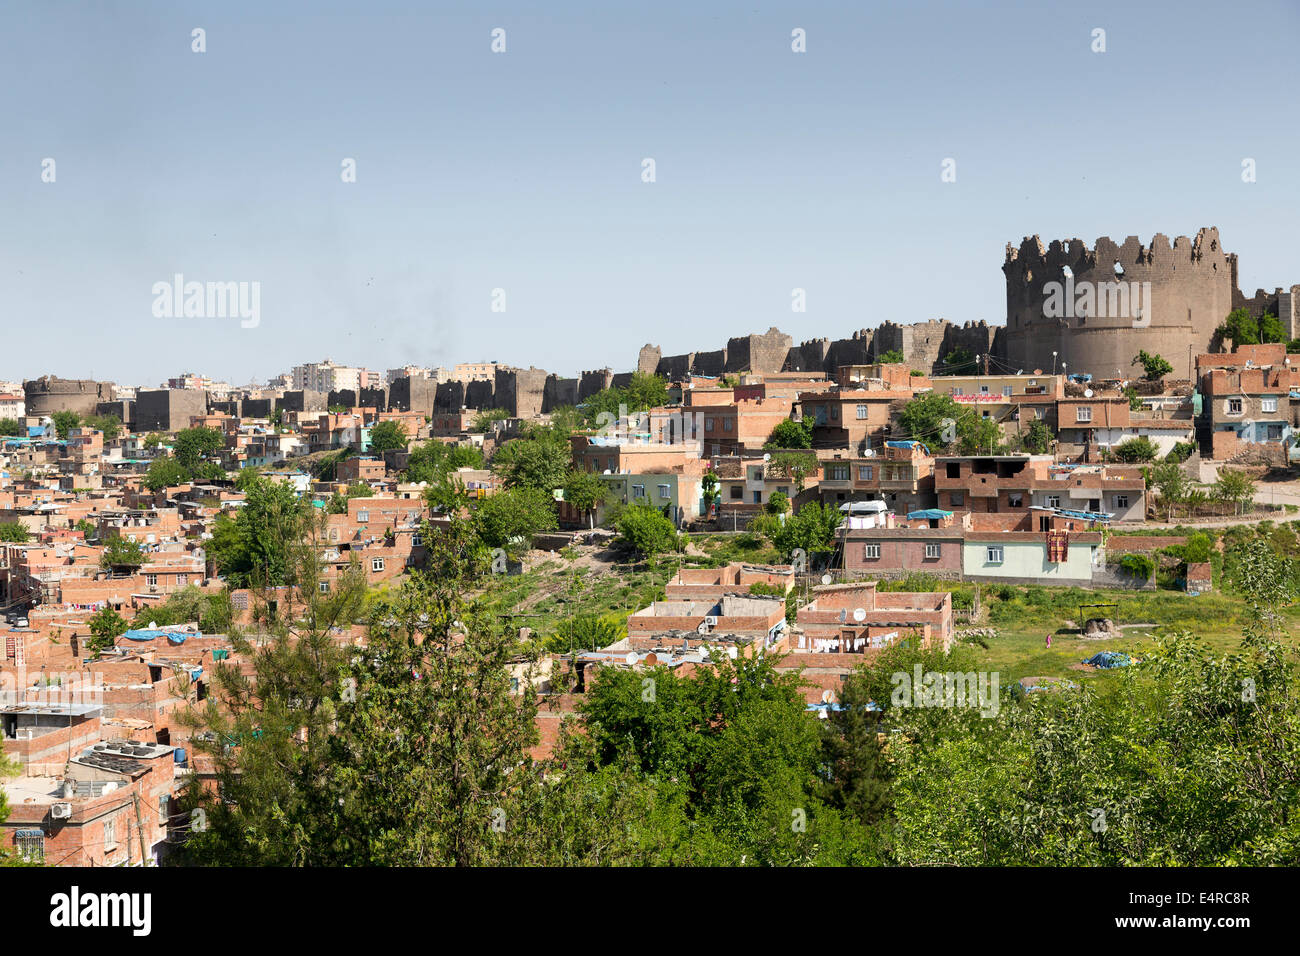 The citadel and the walls of Diyarbakir, Anatolia, Turkey Stock Photo